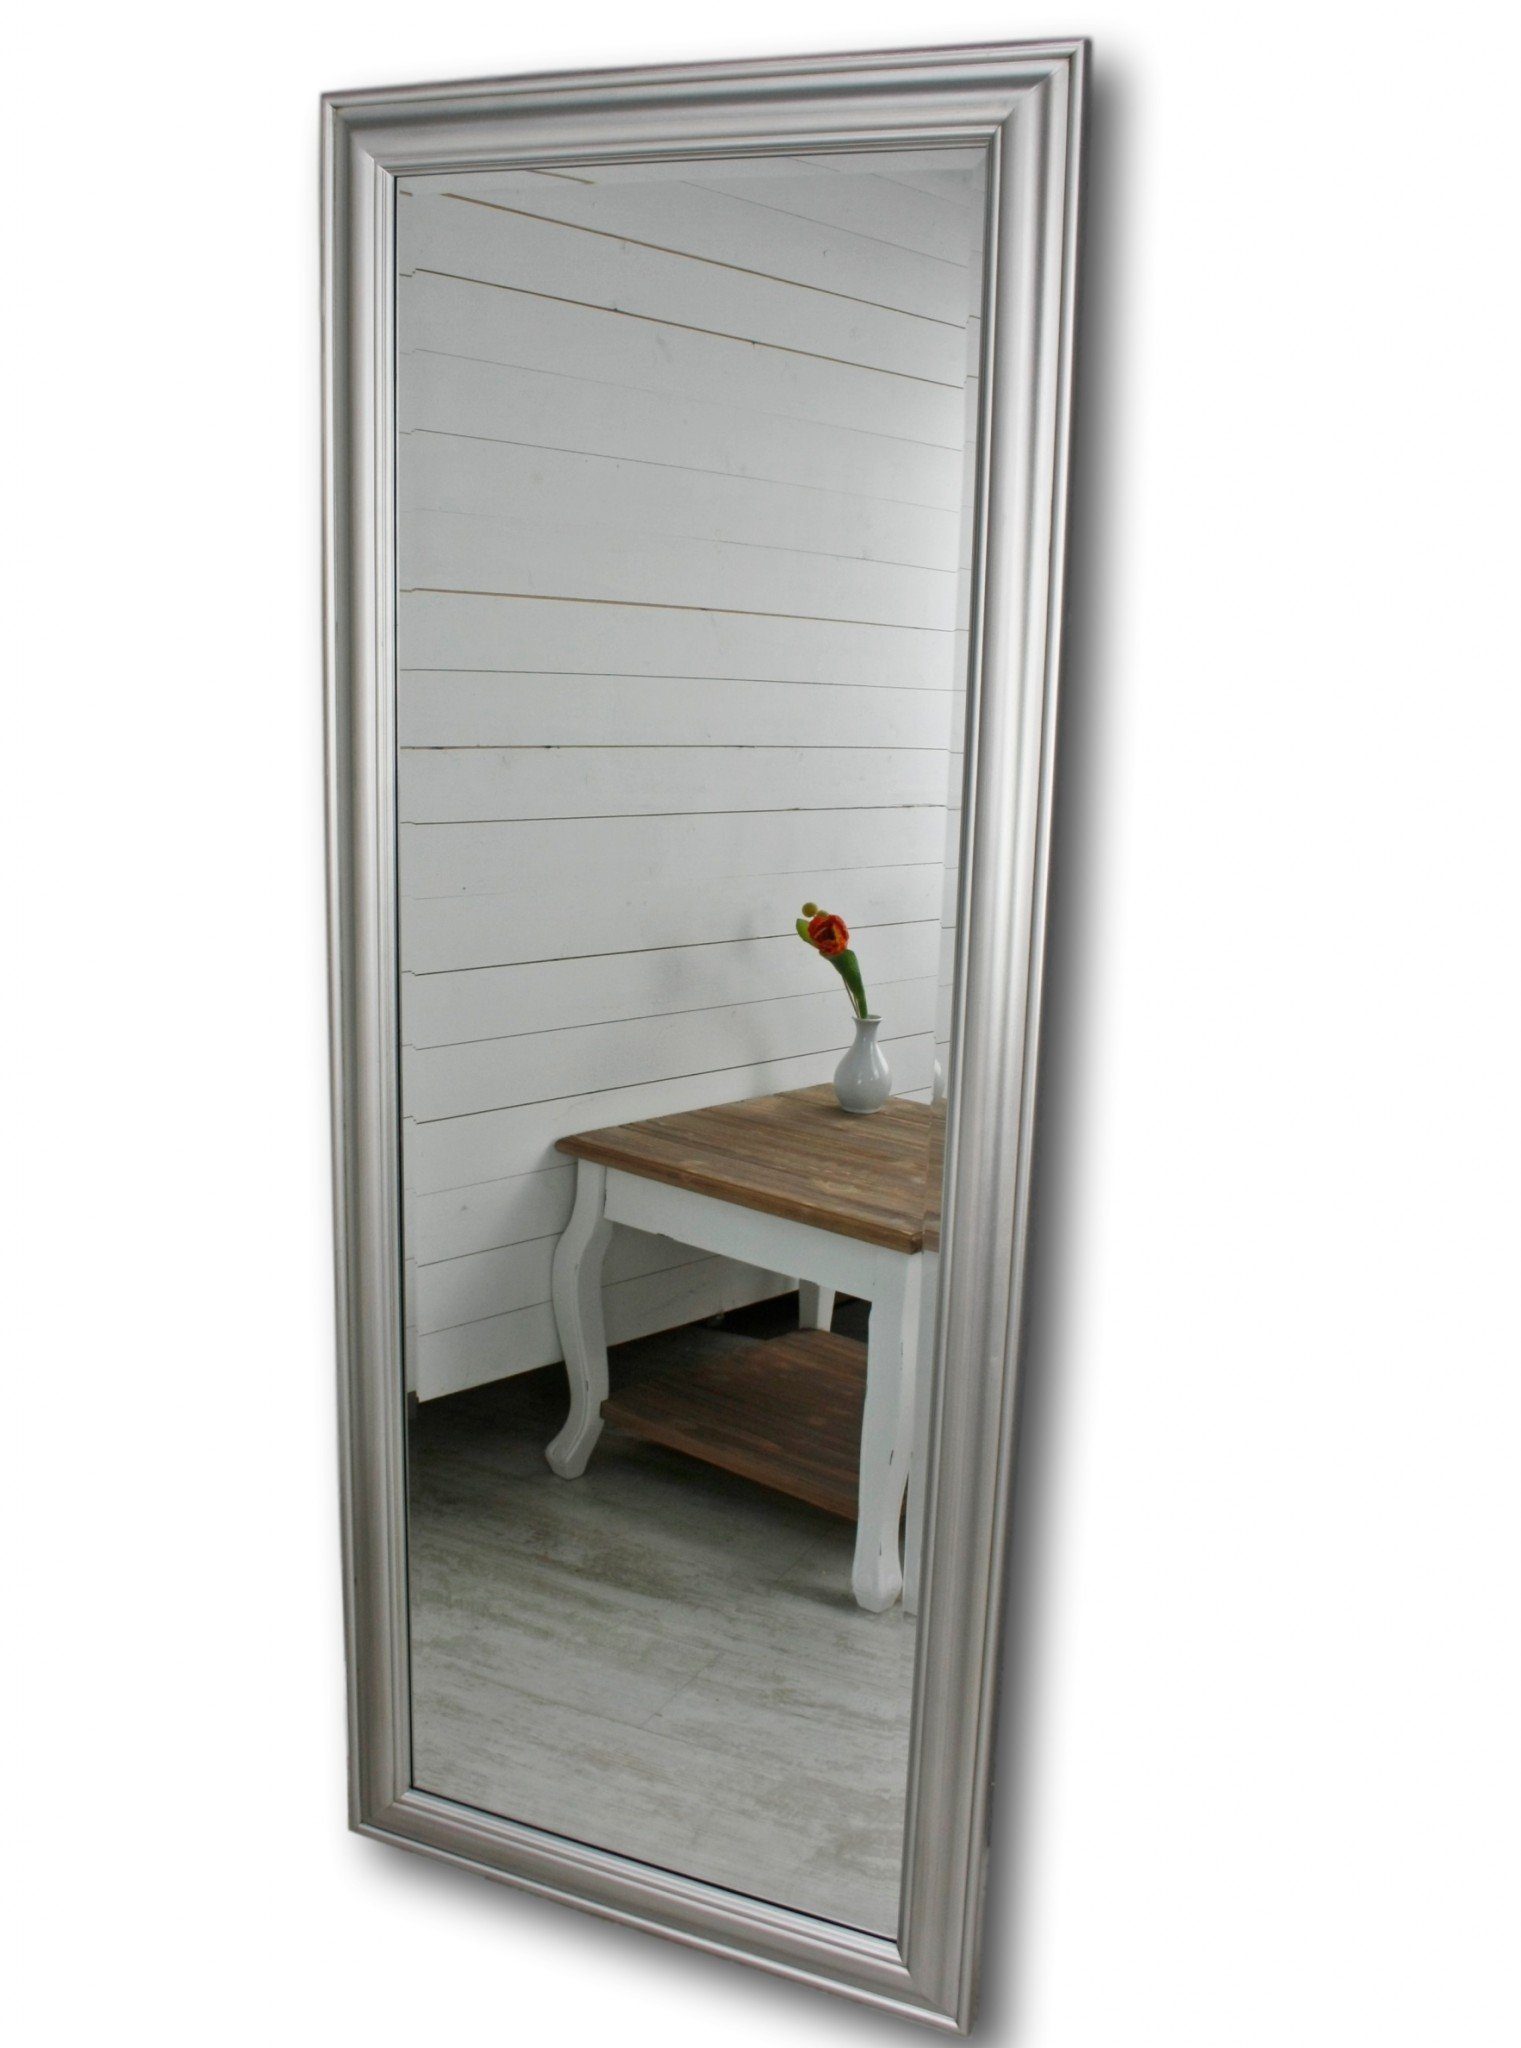 elbmöbel Wandspiegel 150x60x7 schlicht Spiegel 150cm, silber Spiegel: Landhausstil klassischer silber Wandspiegel